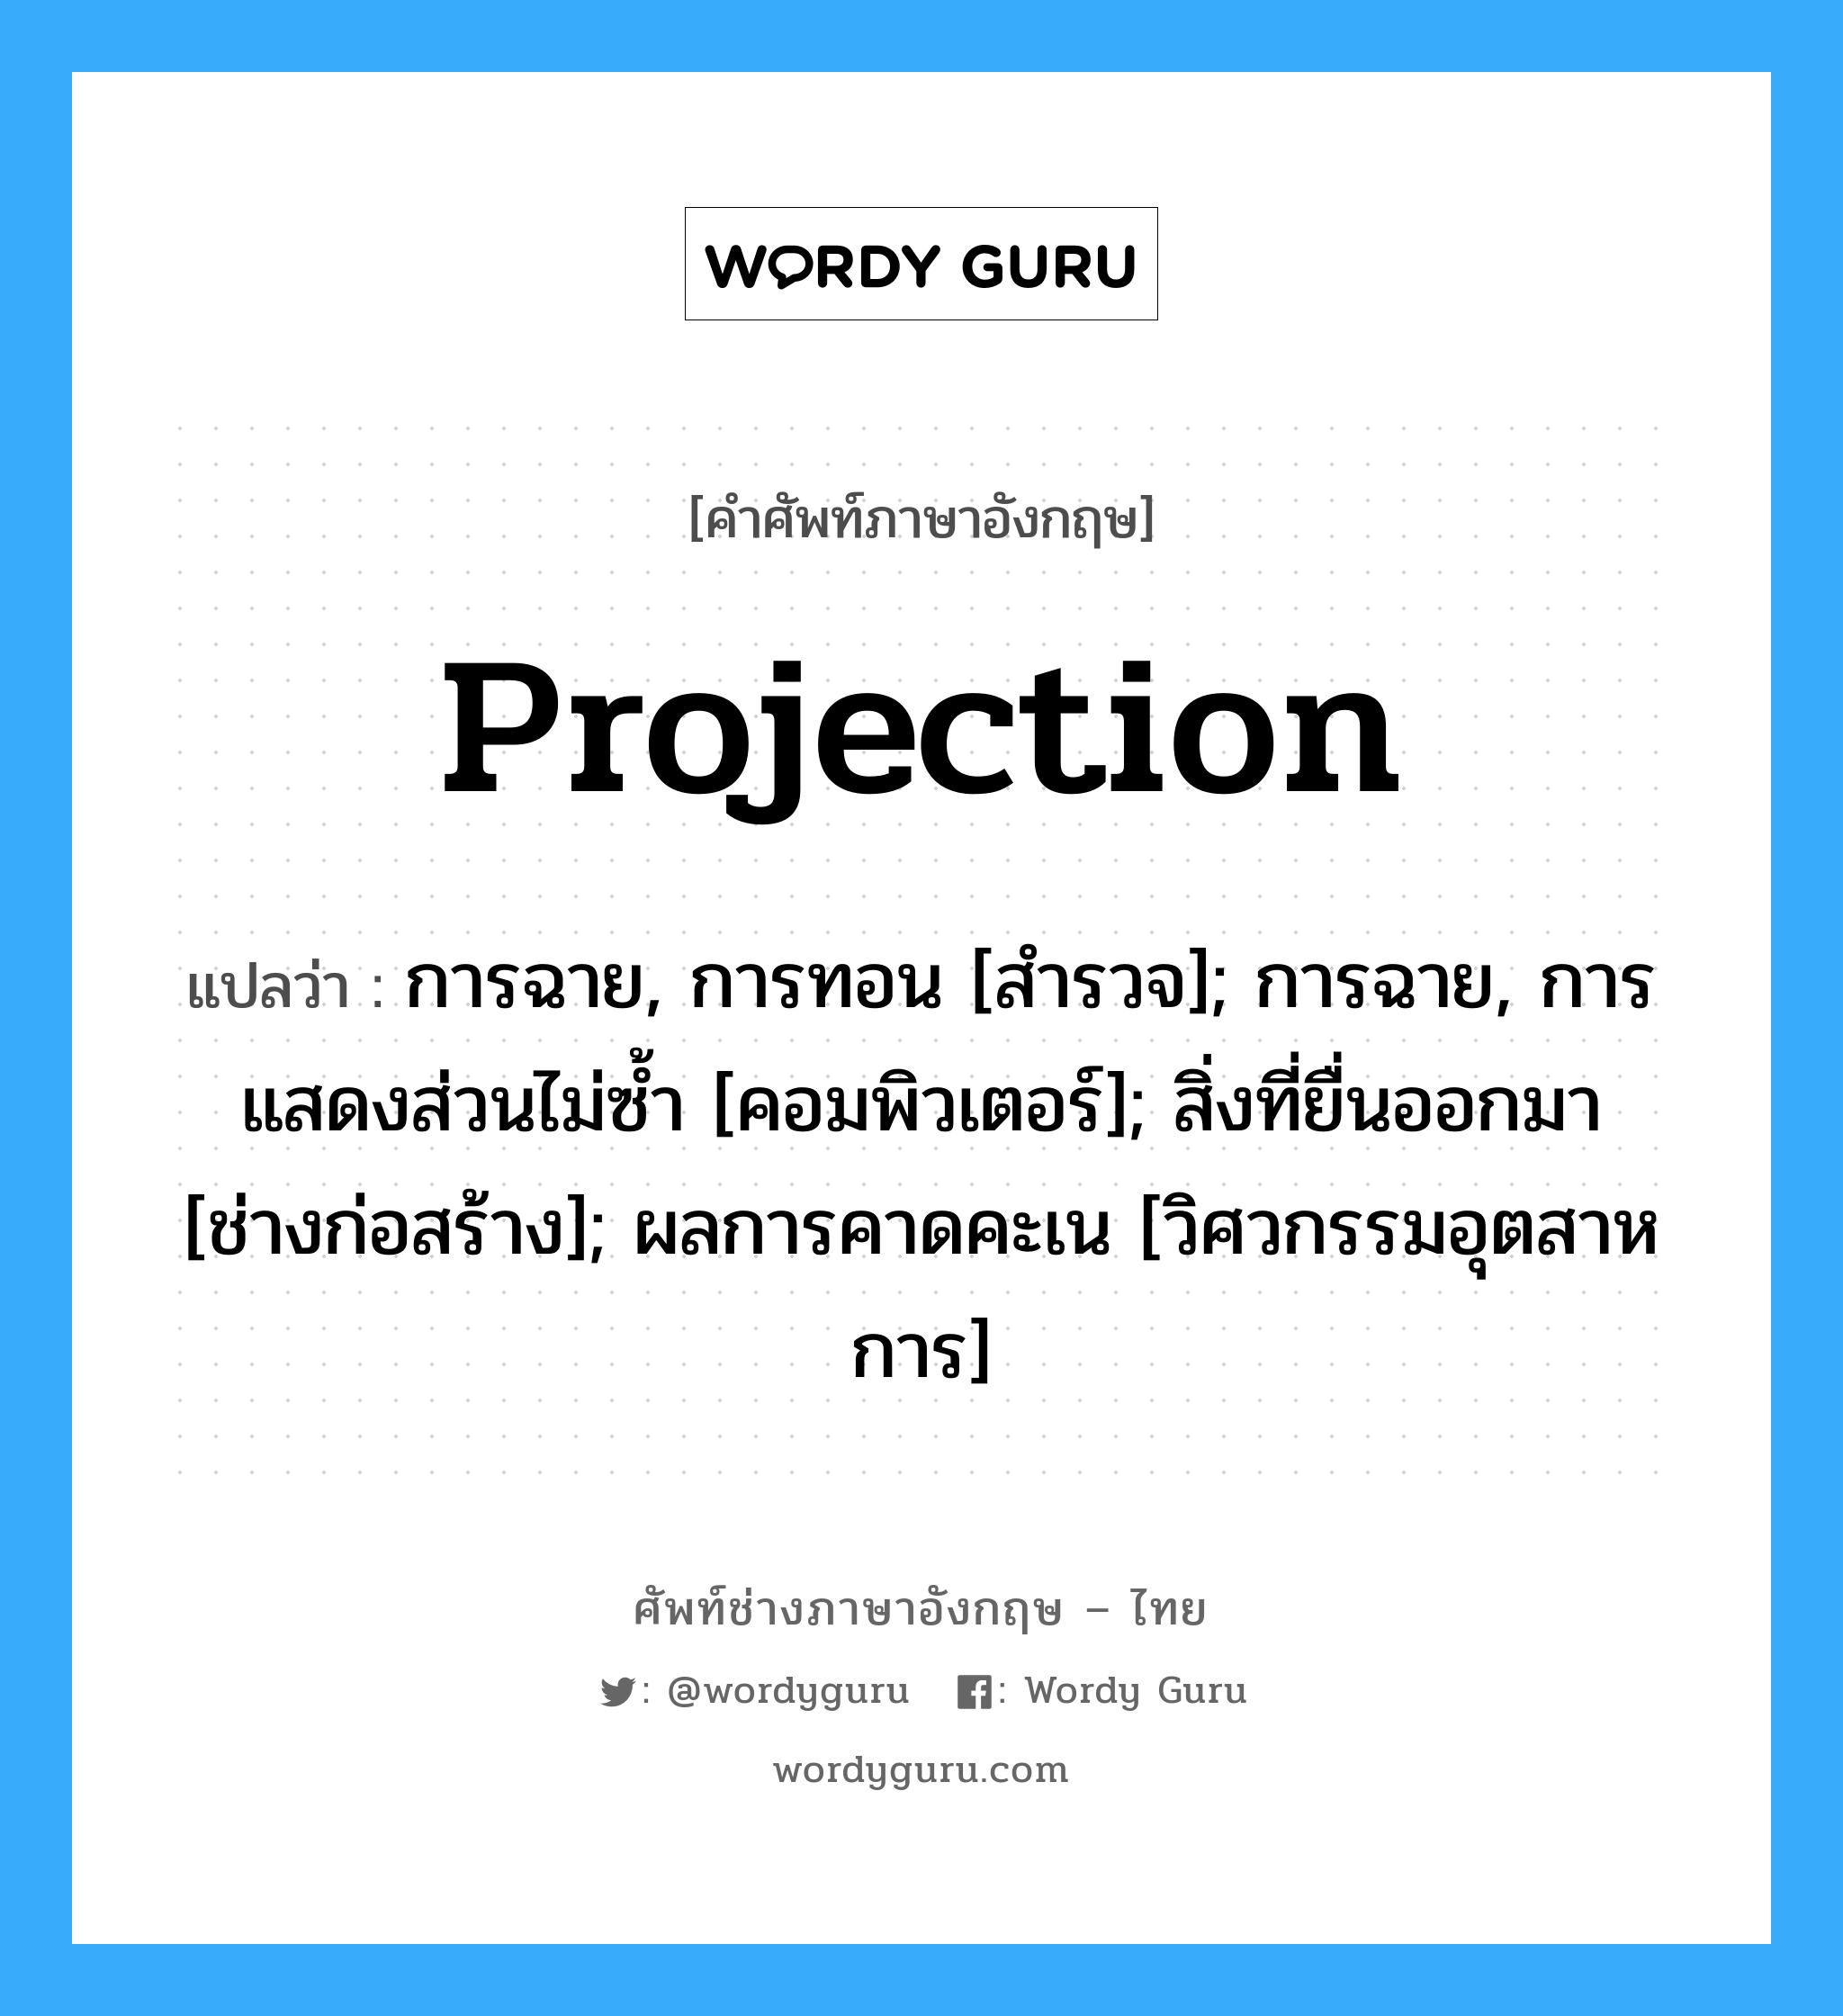 Projection แปลว่า?, คำศัพท์ช่างภาษาอังกฤษ - ไทย Projection คำศัพท์ภาษาอังกฤษ Projection แปลว่า การฉาย, การทอน [สำรวจ]; การฉาย, การแสดงส่วนไม่ซ้ำ [คอมพิวเตอร์]; สิ่งที่ยื่นออกมา [ช่างก่อสร้าง]; ผลการคาดคะเน [วิศวกรรมอุตสาหการ]